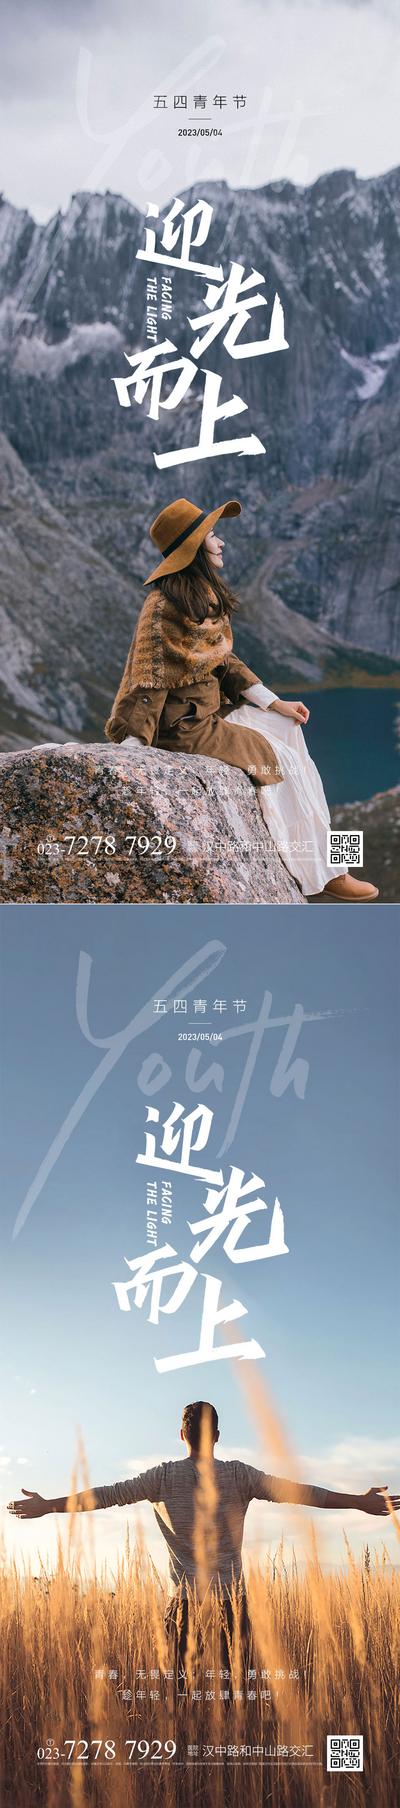 南门网 广告 海报 房地产 五四 青年节 公历节日 励志 正能量